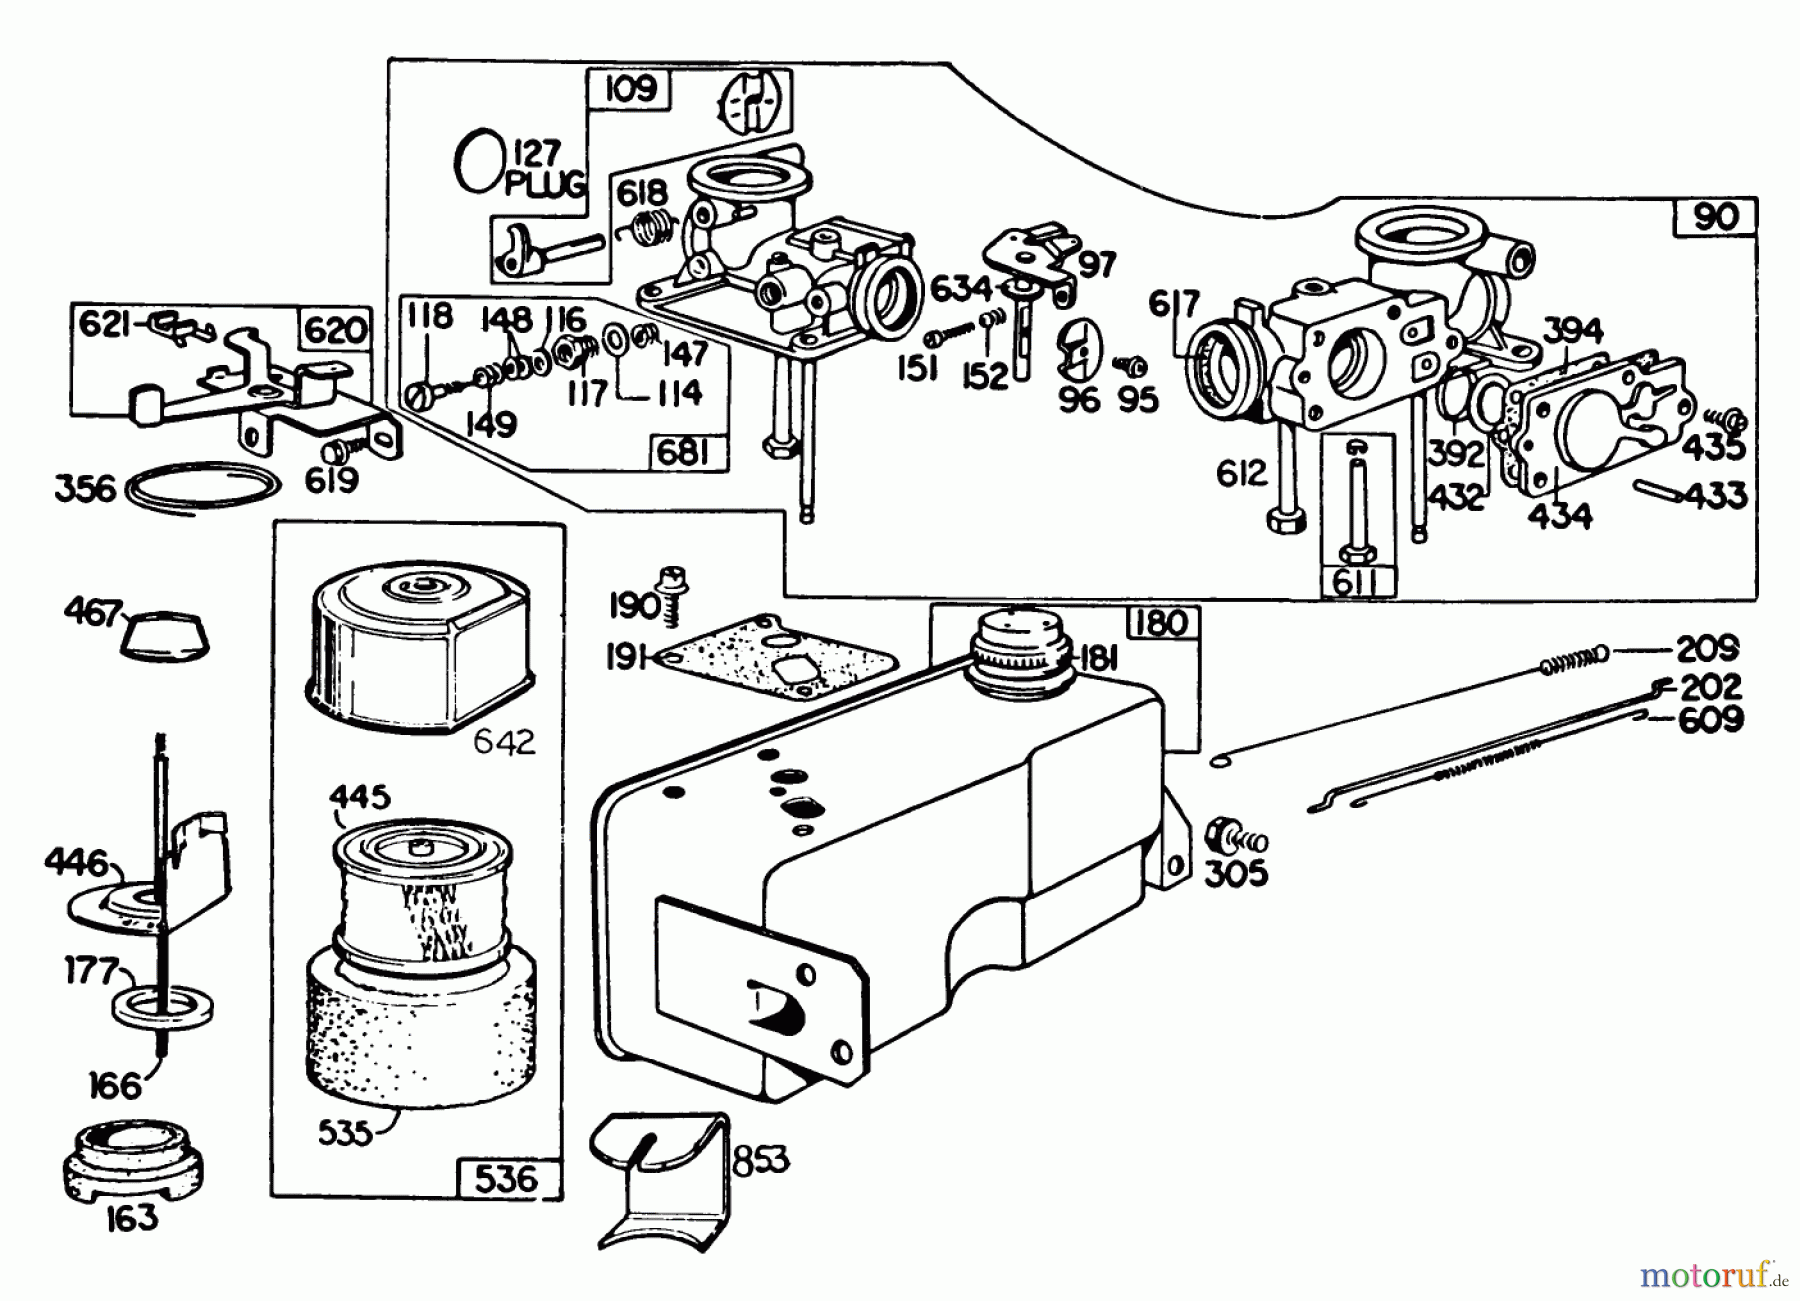  Toro Neu Mowers, Walk-Behind Seite 2 22015 - Toro Lawnmower, 1983 (3000001-3999999) ENGINE BRIGGS & STRATTON MODEL 131922-0163-01 #3